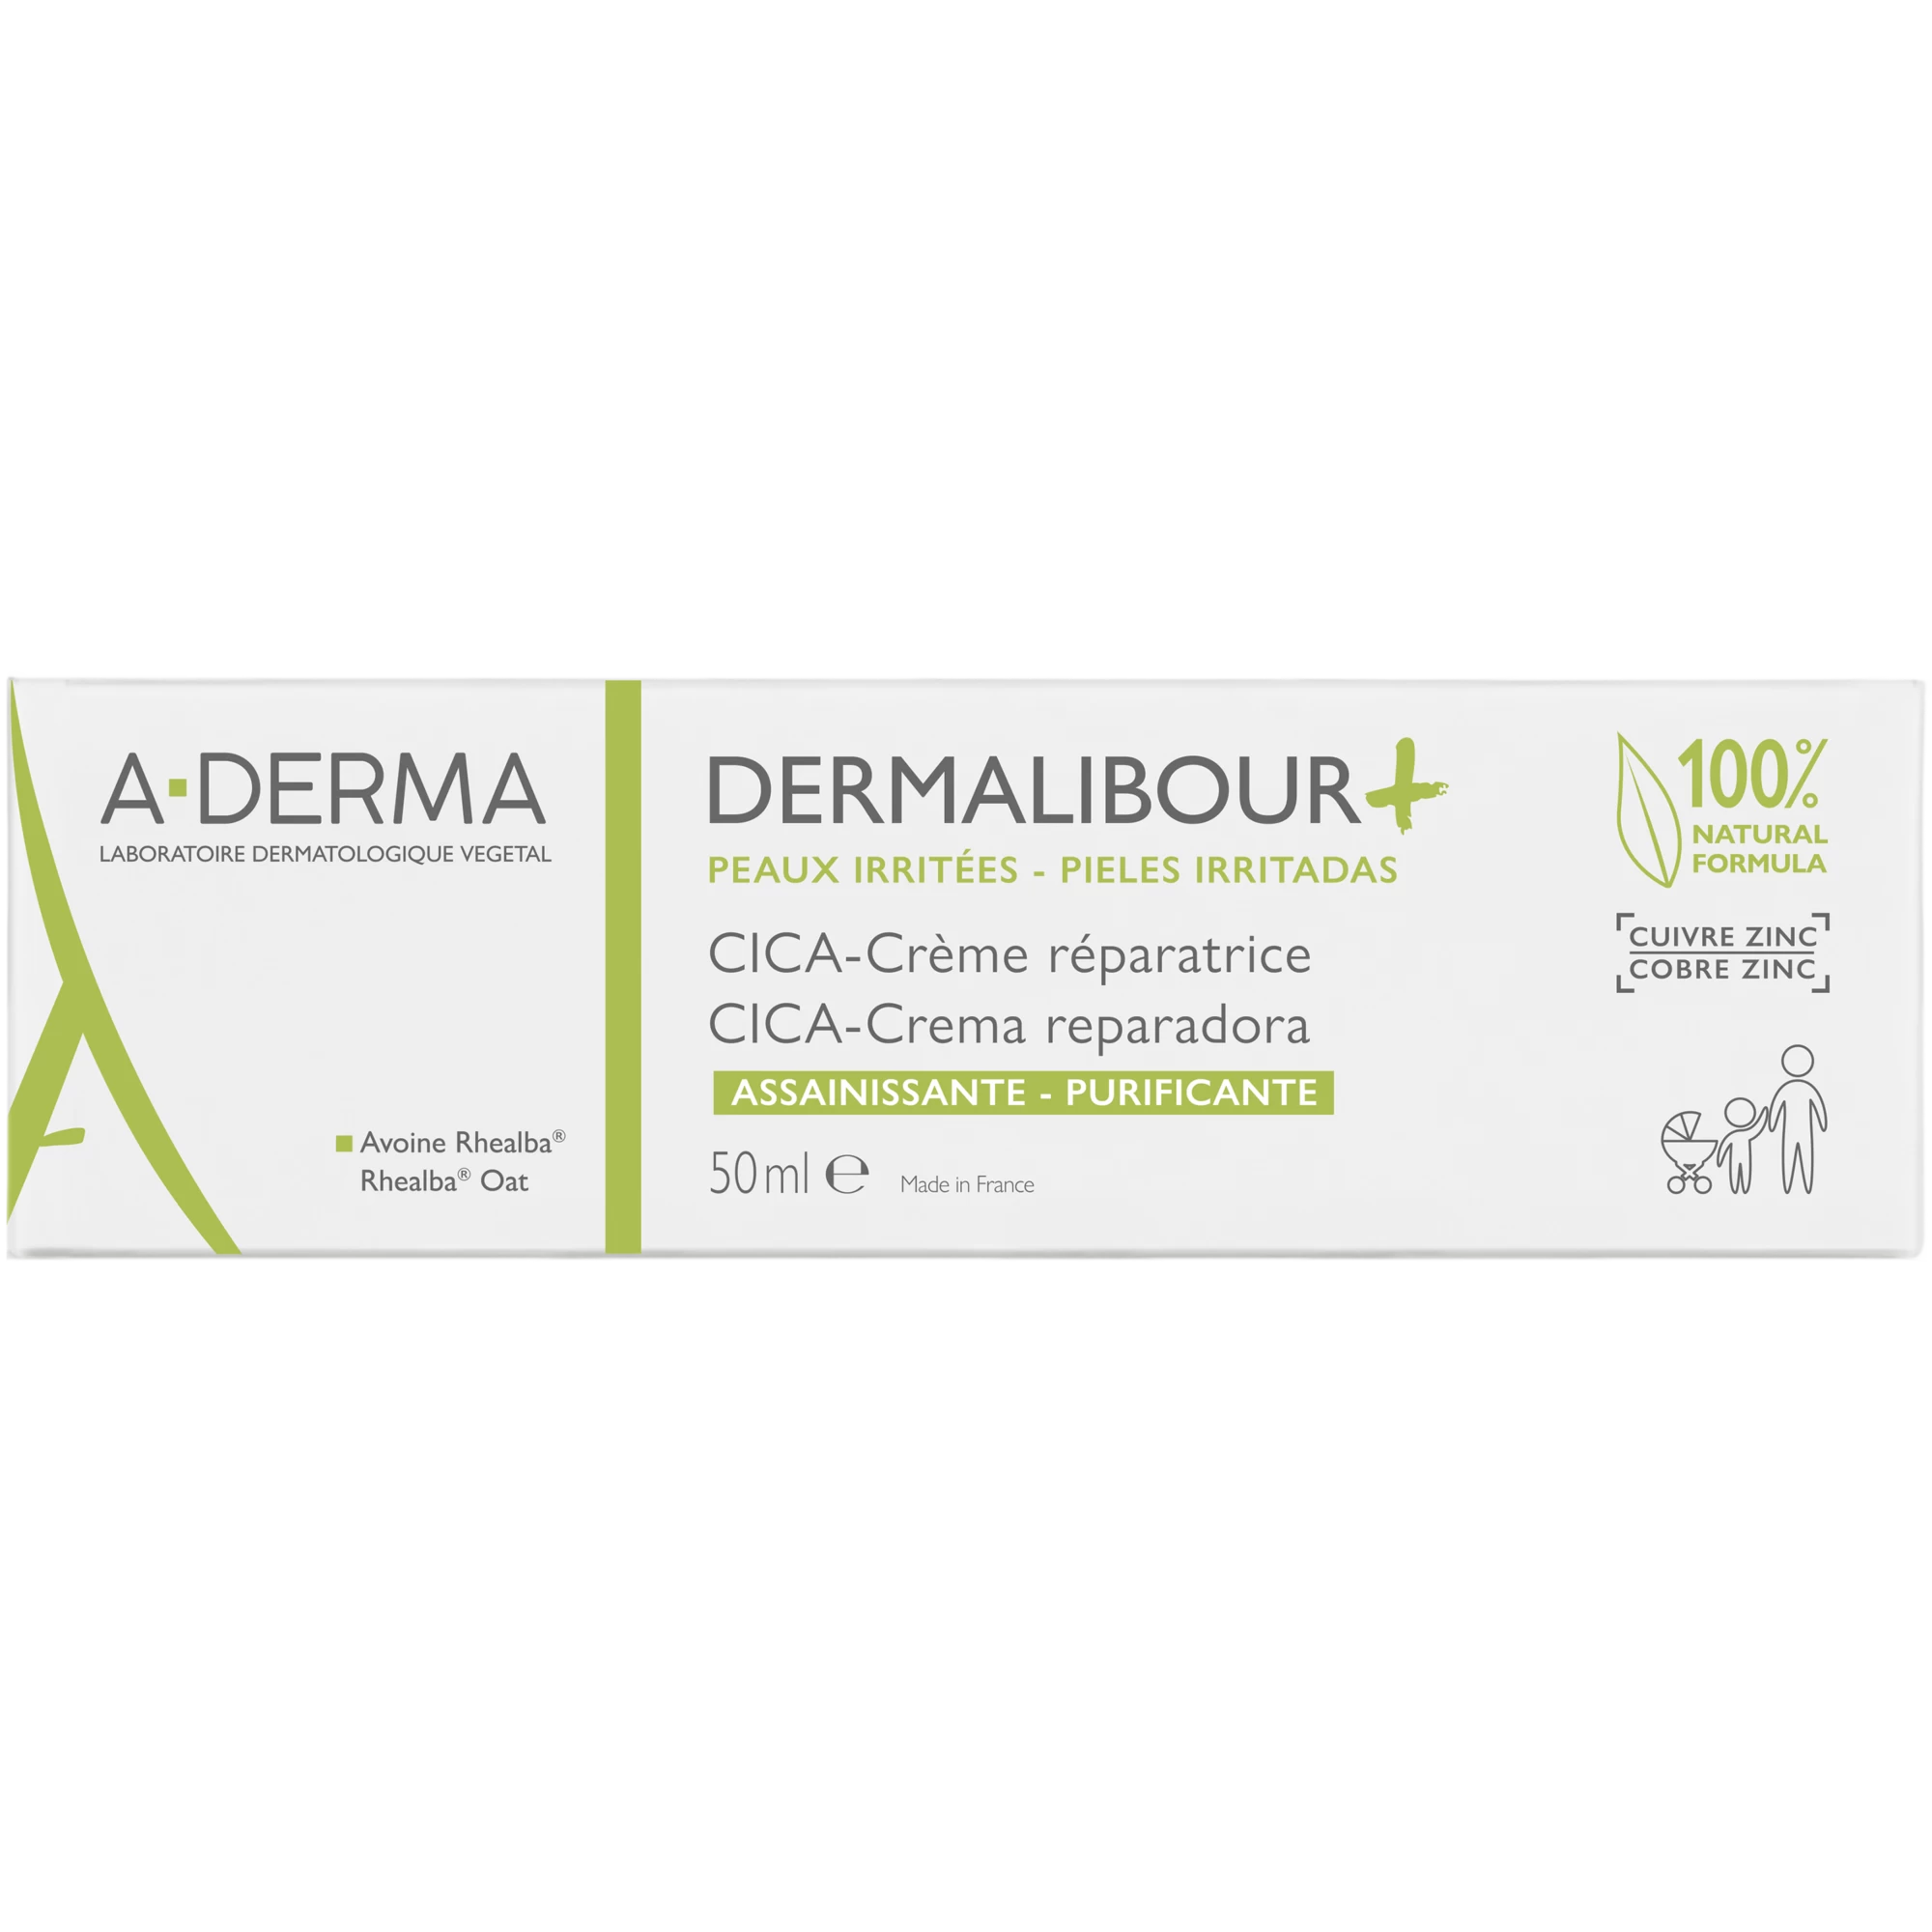 A-DERMA Dermalibour+cica krema 50ml